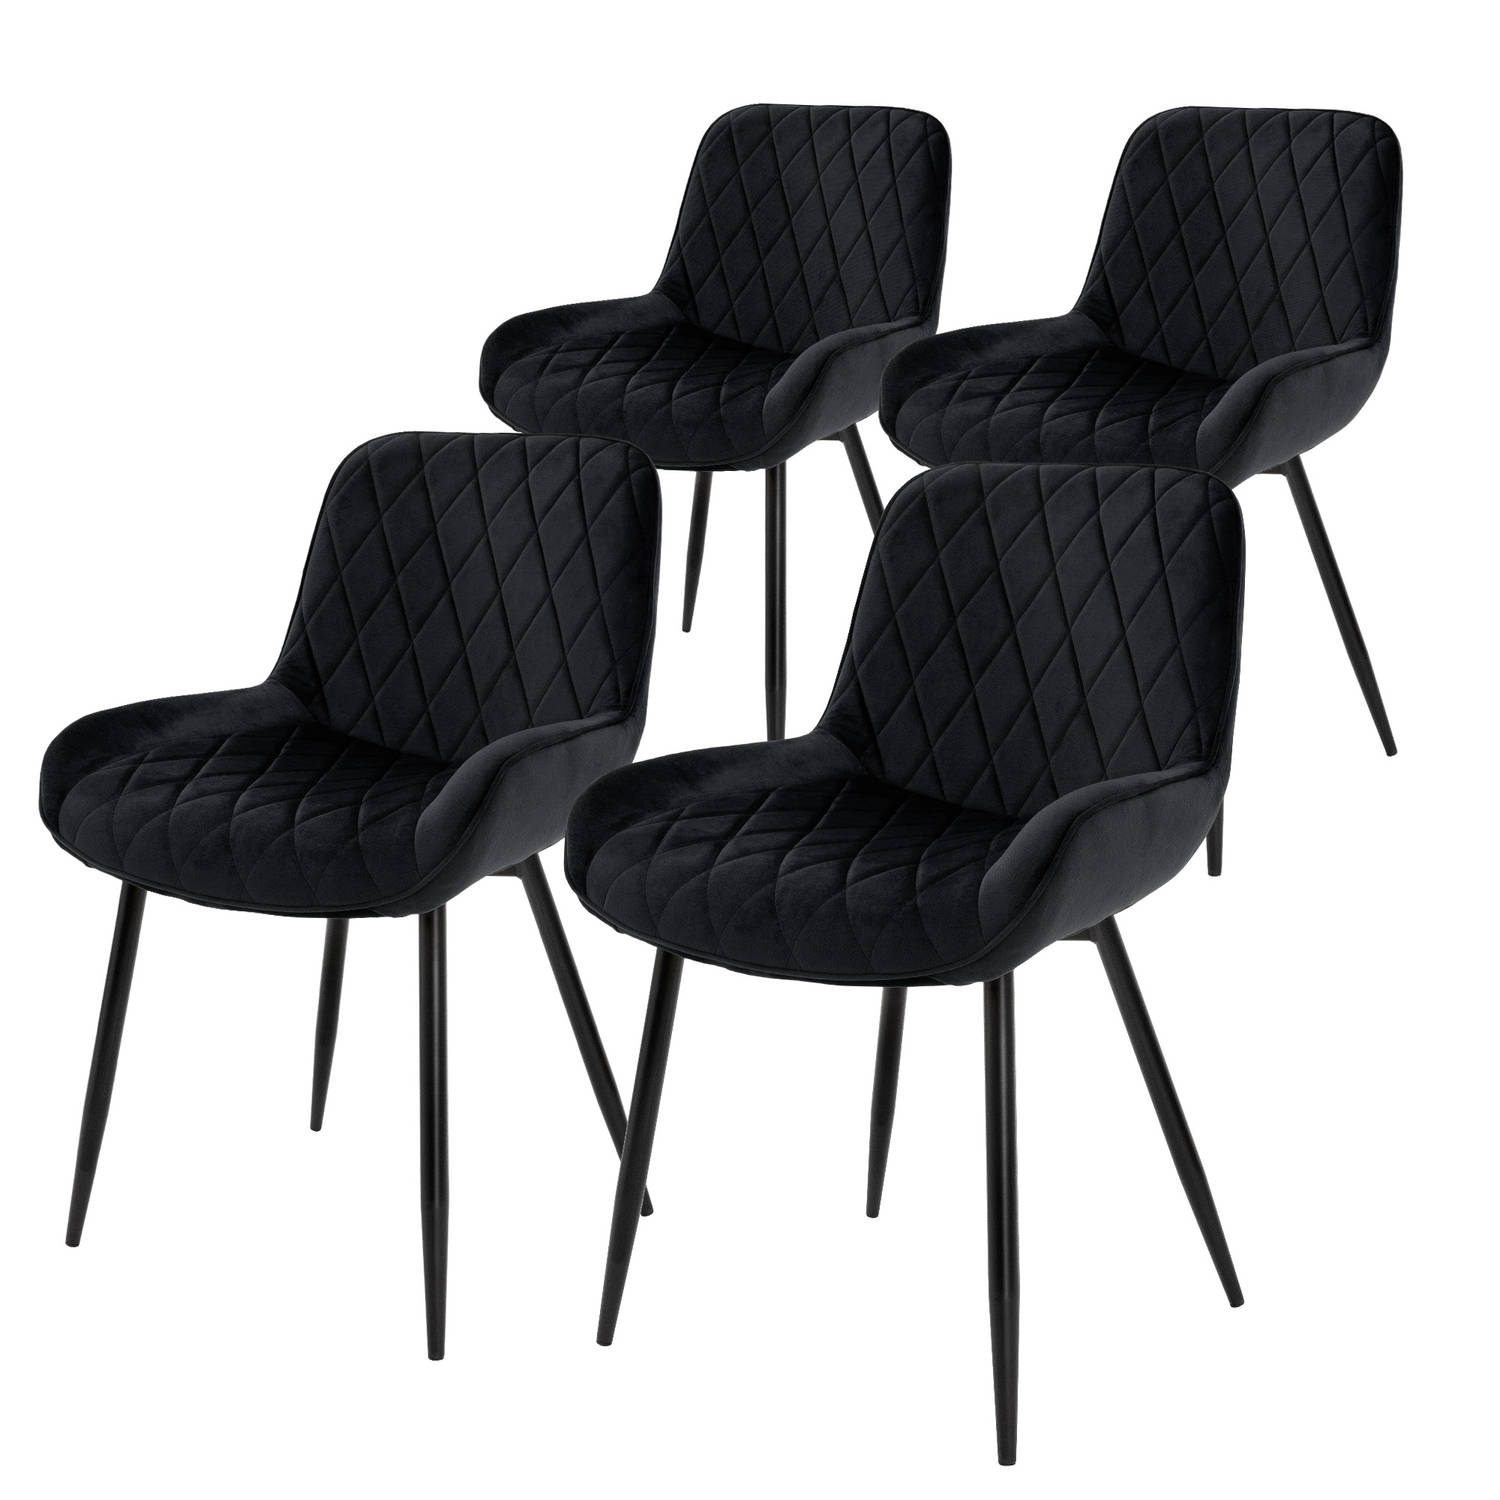 ML-Design Set van 4 Eetkamerstoelen Eetkamerstoel met rugleuning en armleuningen, zwart, fluwelen zitting, metalen poten, Keukenstoelen Woonkamerstoelen Gestoffeerde stoelen Krukke